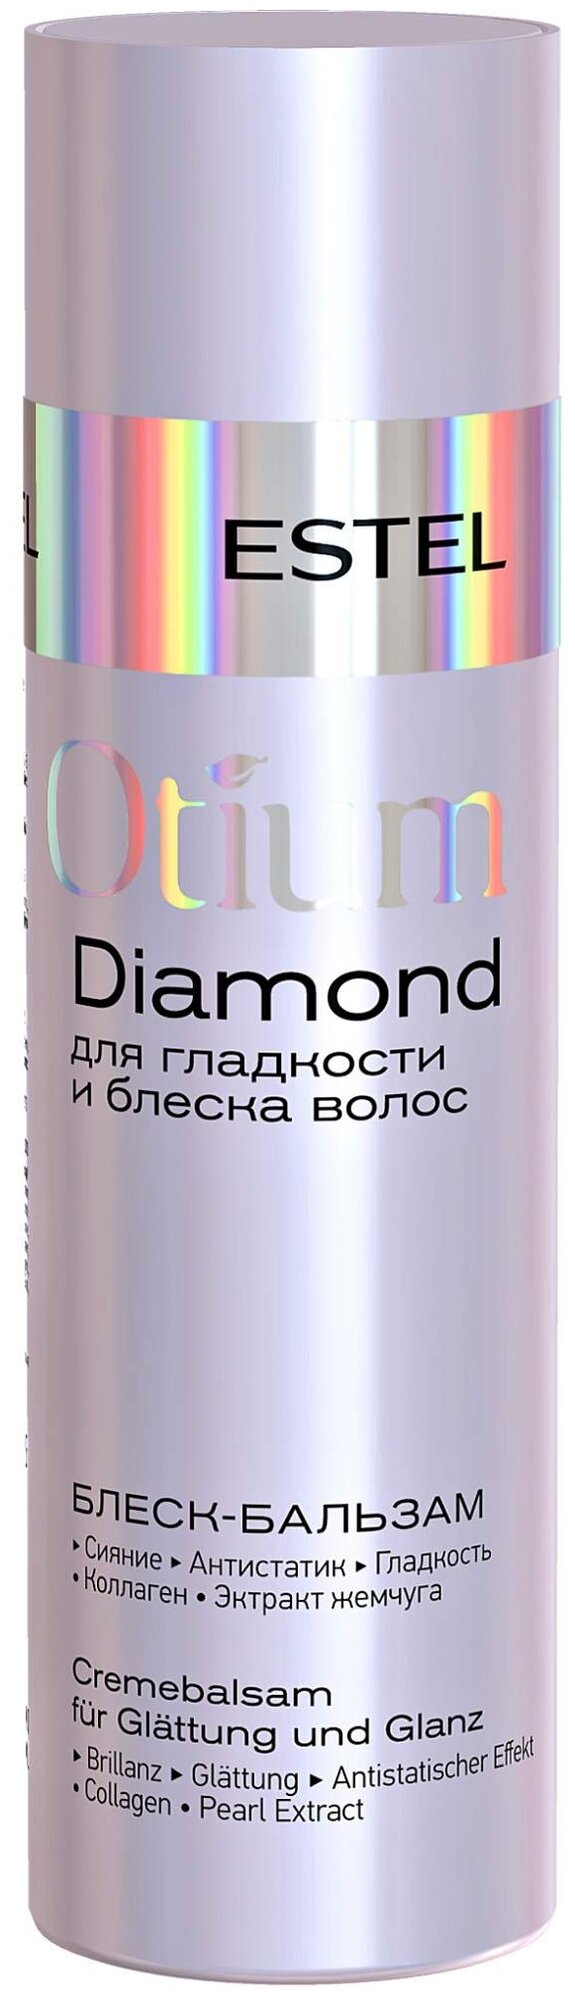 Блеск-бальзам ESTEL для гладкости и блеска волос Otium Diamond 200 мл